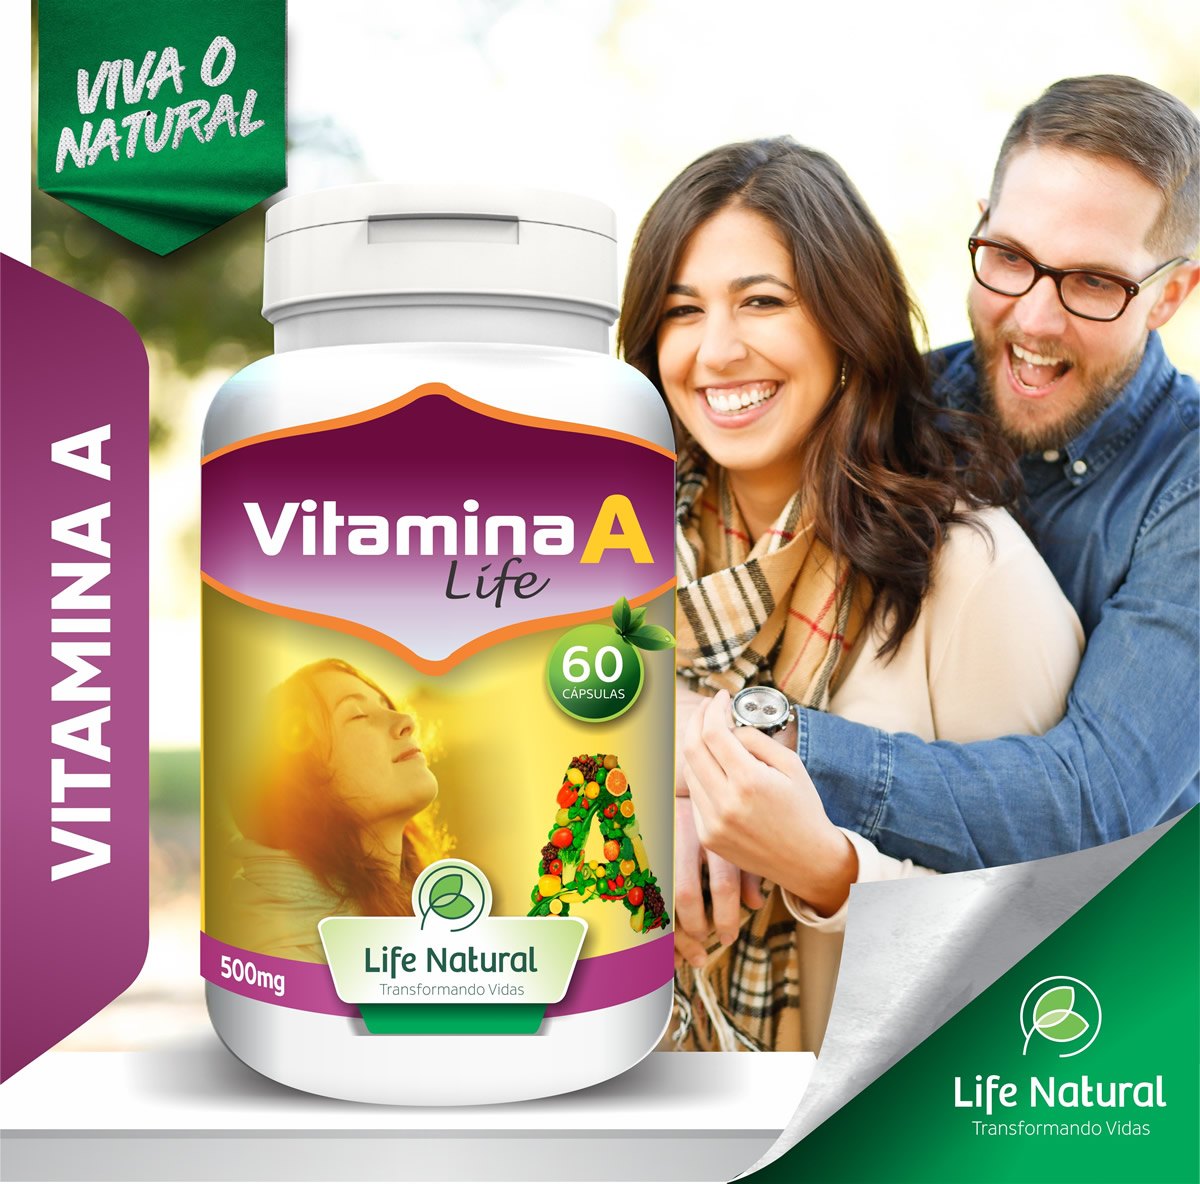 Você costuma ingerir vitamina A regularmente?